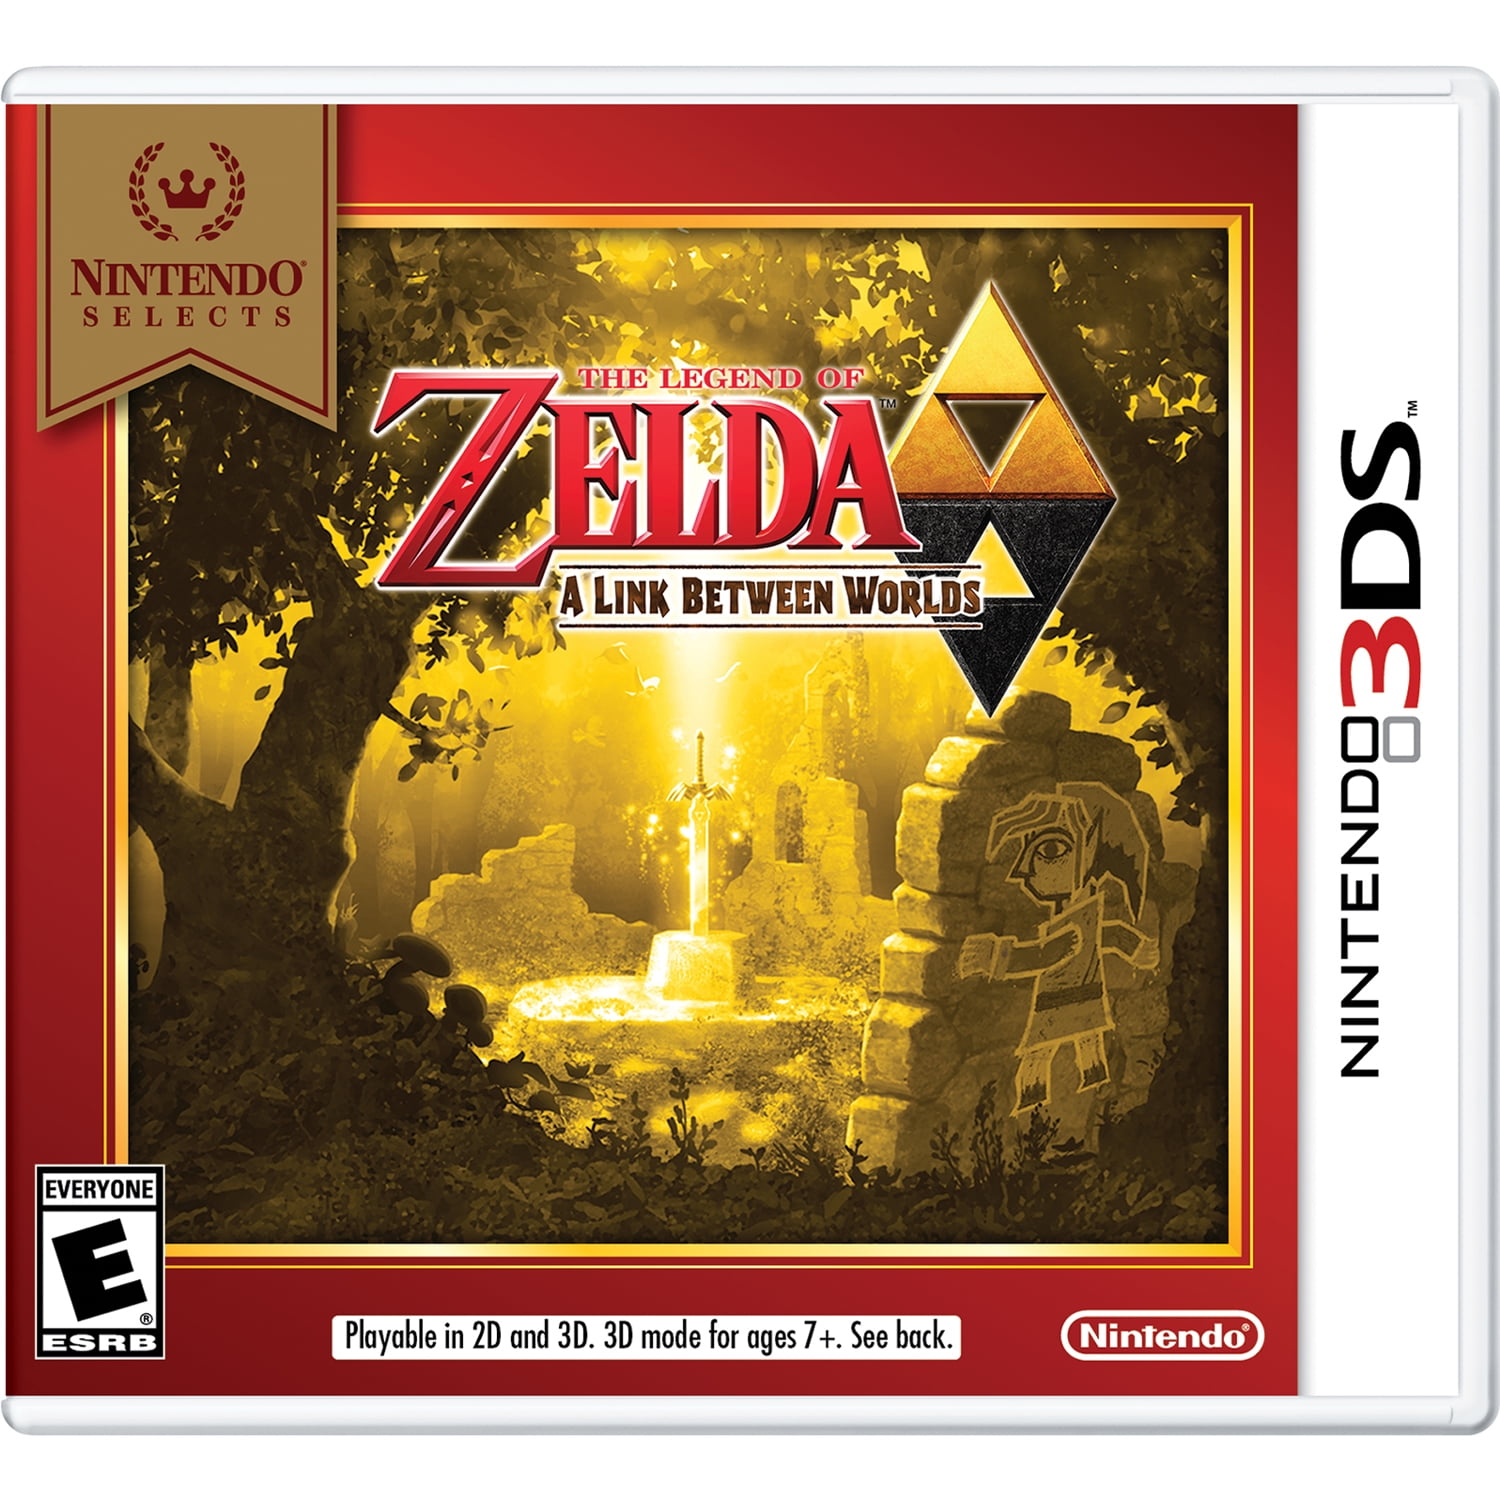 Legend of Zelda Nintendo Wii U 3DS Wii DS Games - Choose Your Game